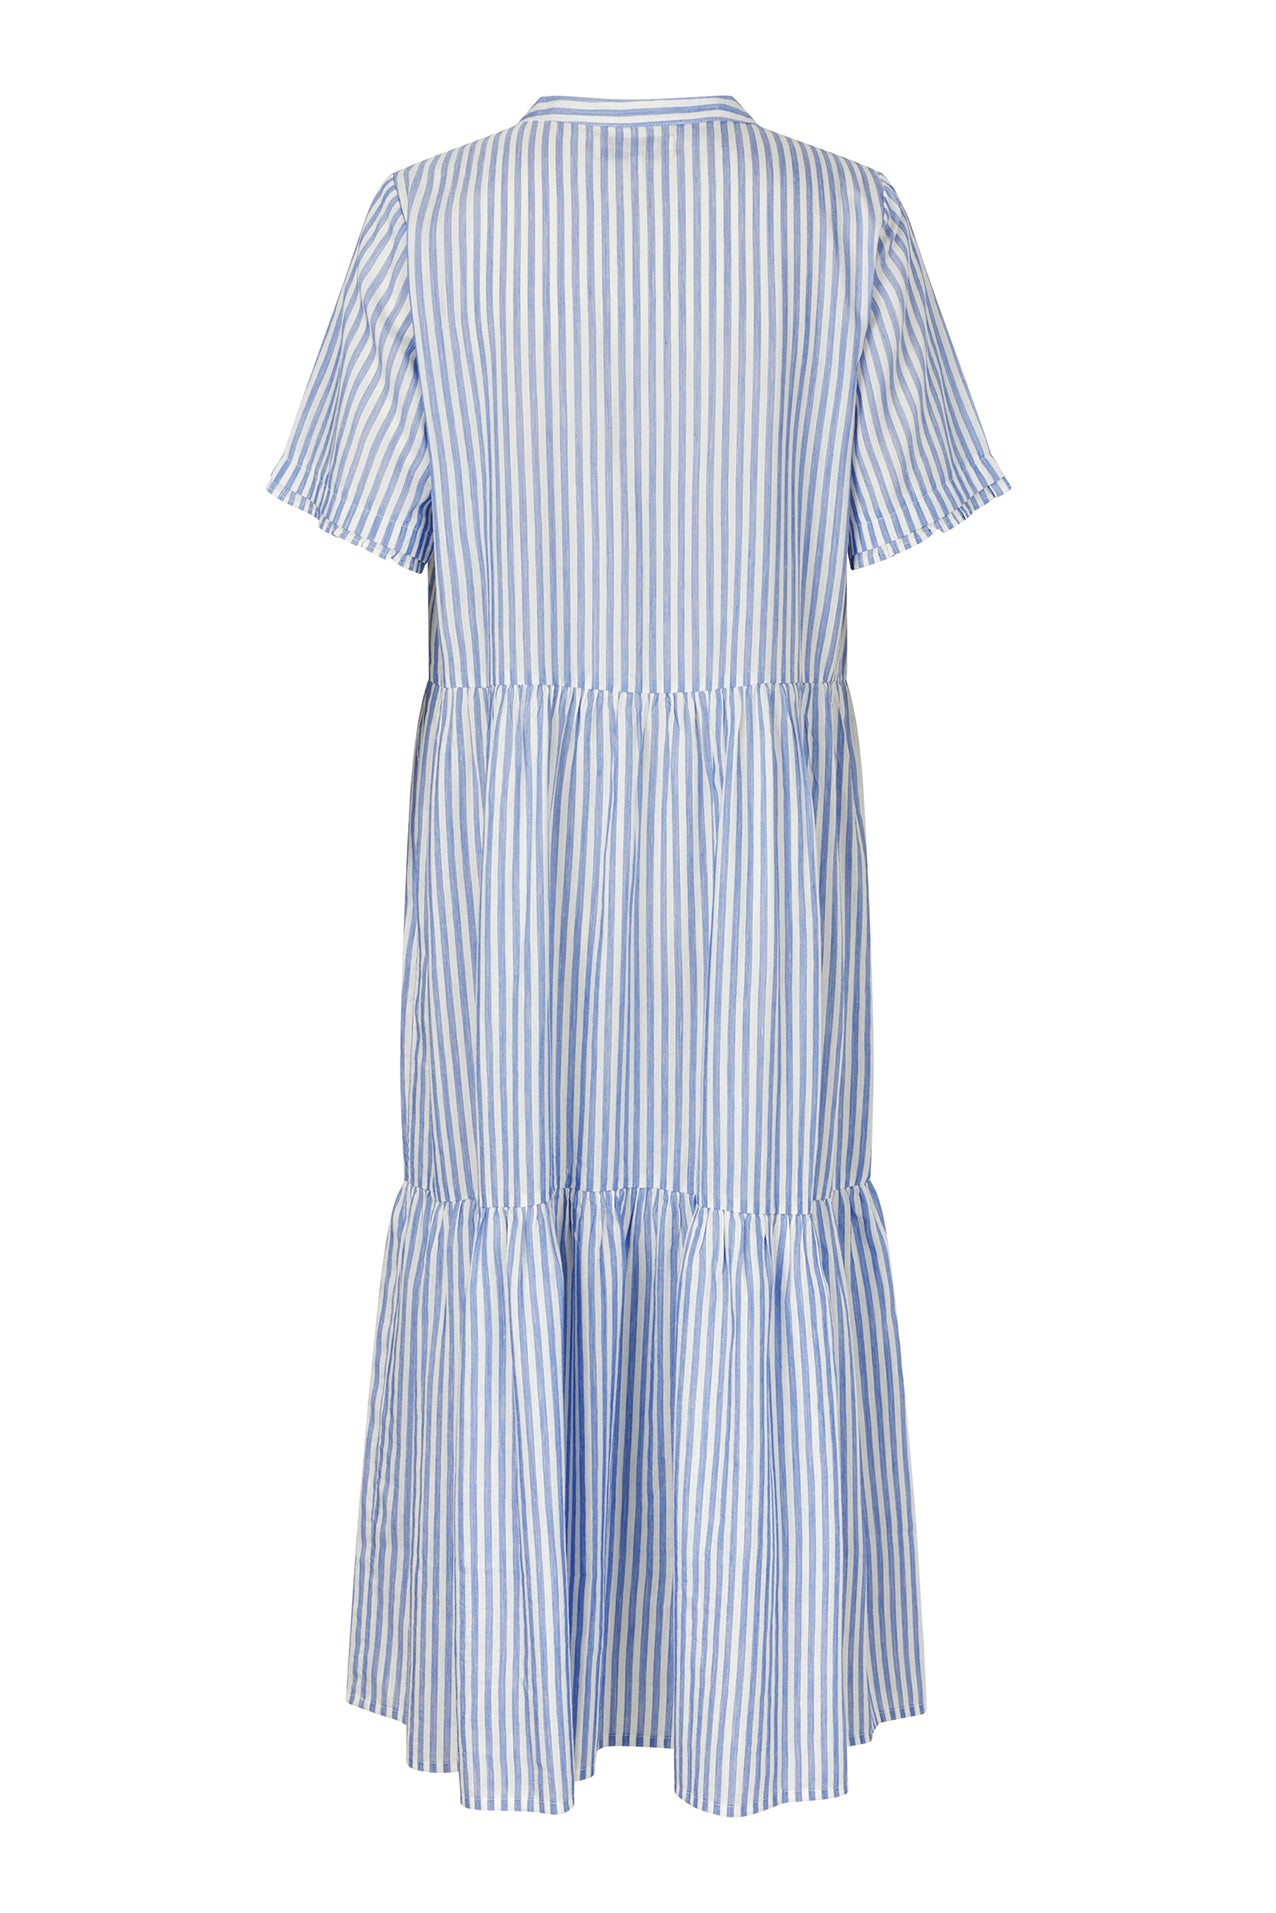 Lollys Laundry FieLL Midi Dress SS Dress 80 Stripe